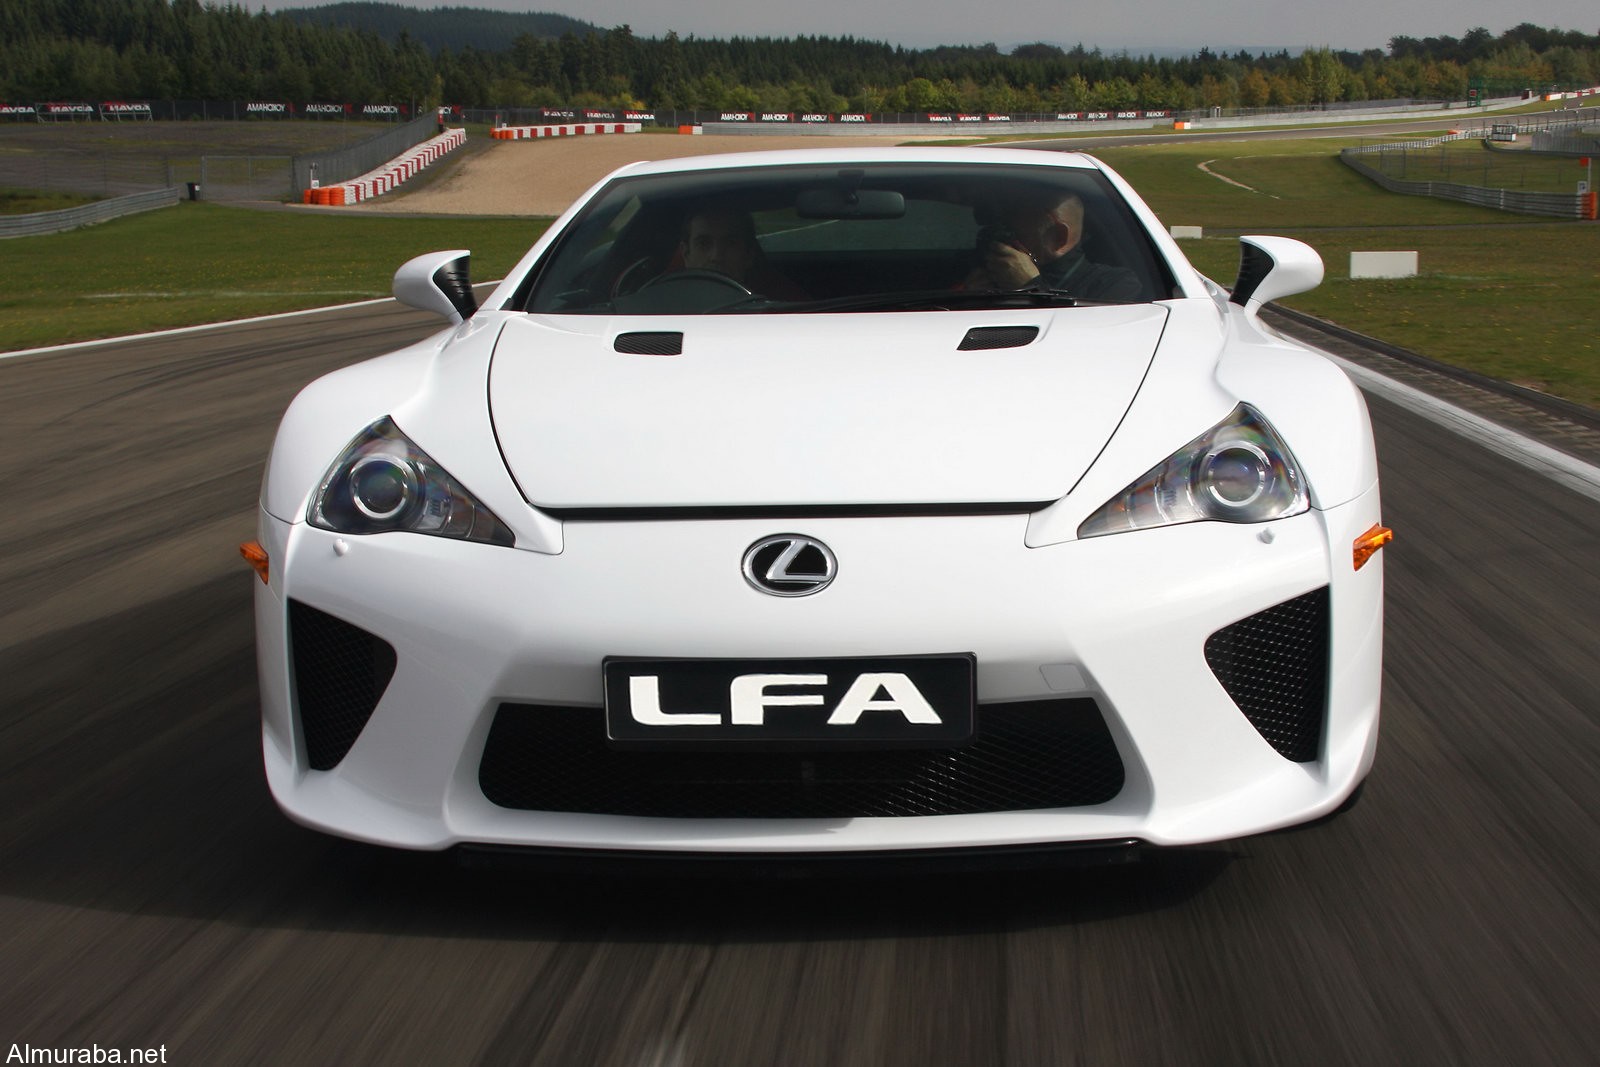 "لكزس" لا تنتوي تصنيع طراز جديد من سيارتها لكزس LFA الرياضية الخارقة Lexus 1